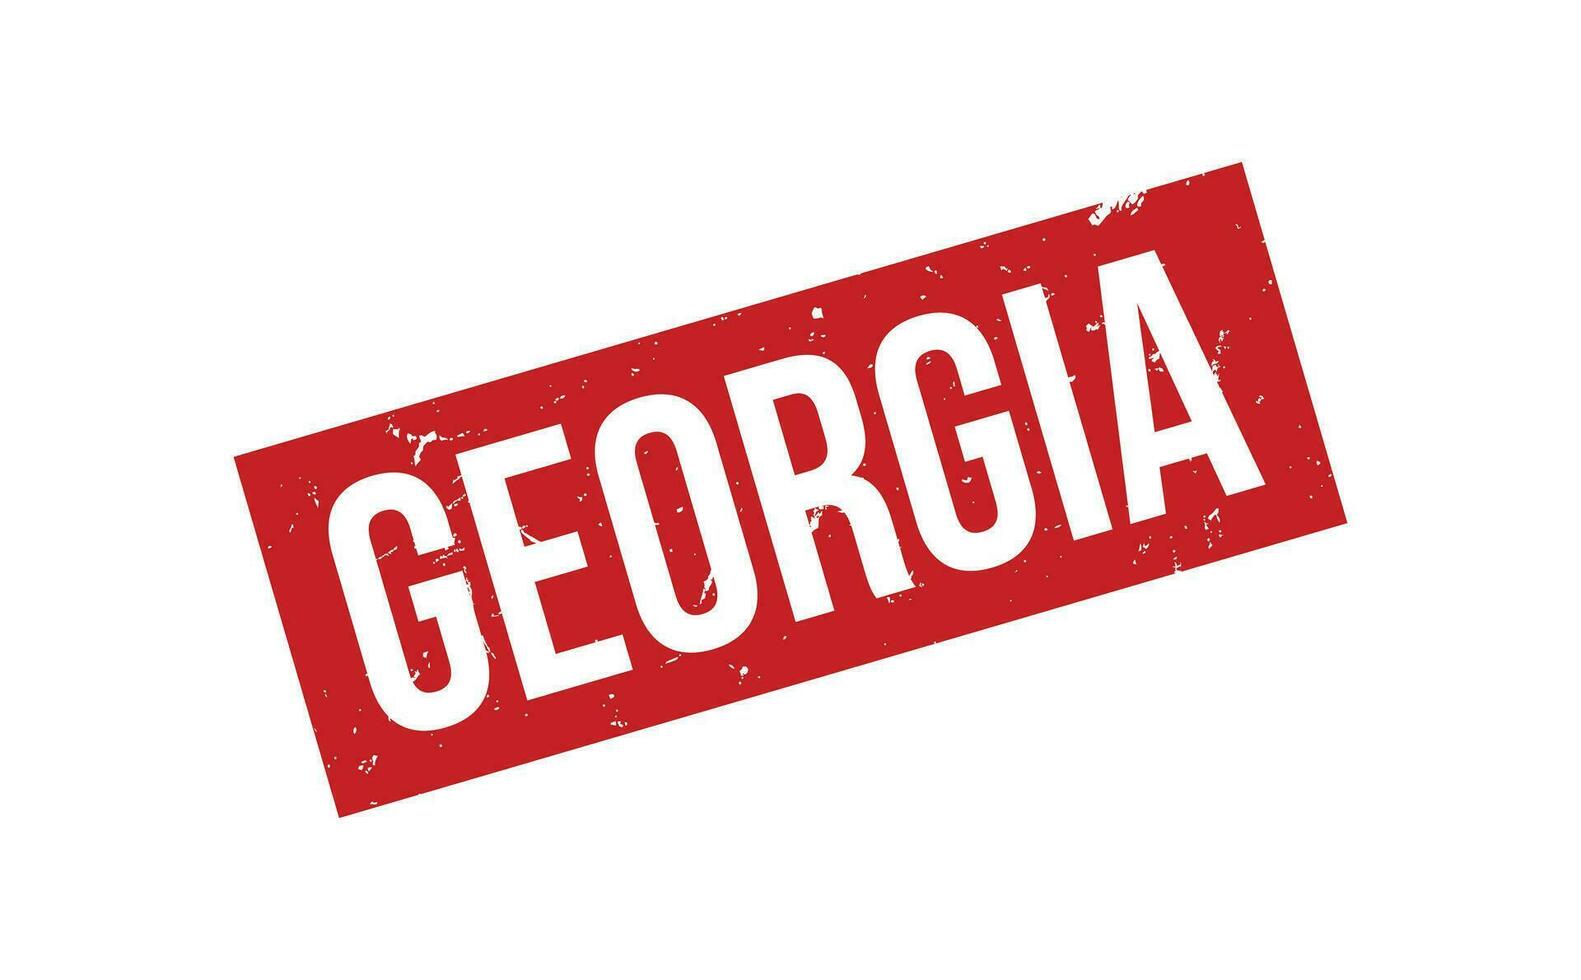 Georgia gomma da cancellare francobollo foca vettore